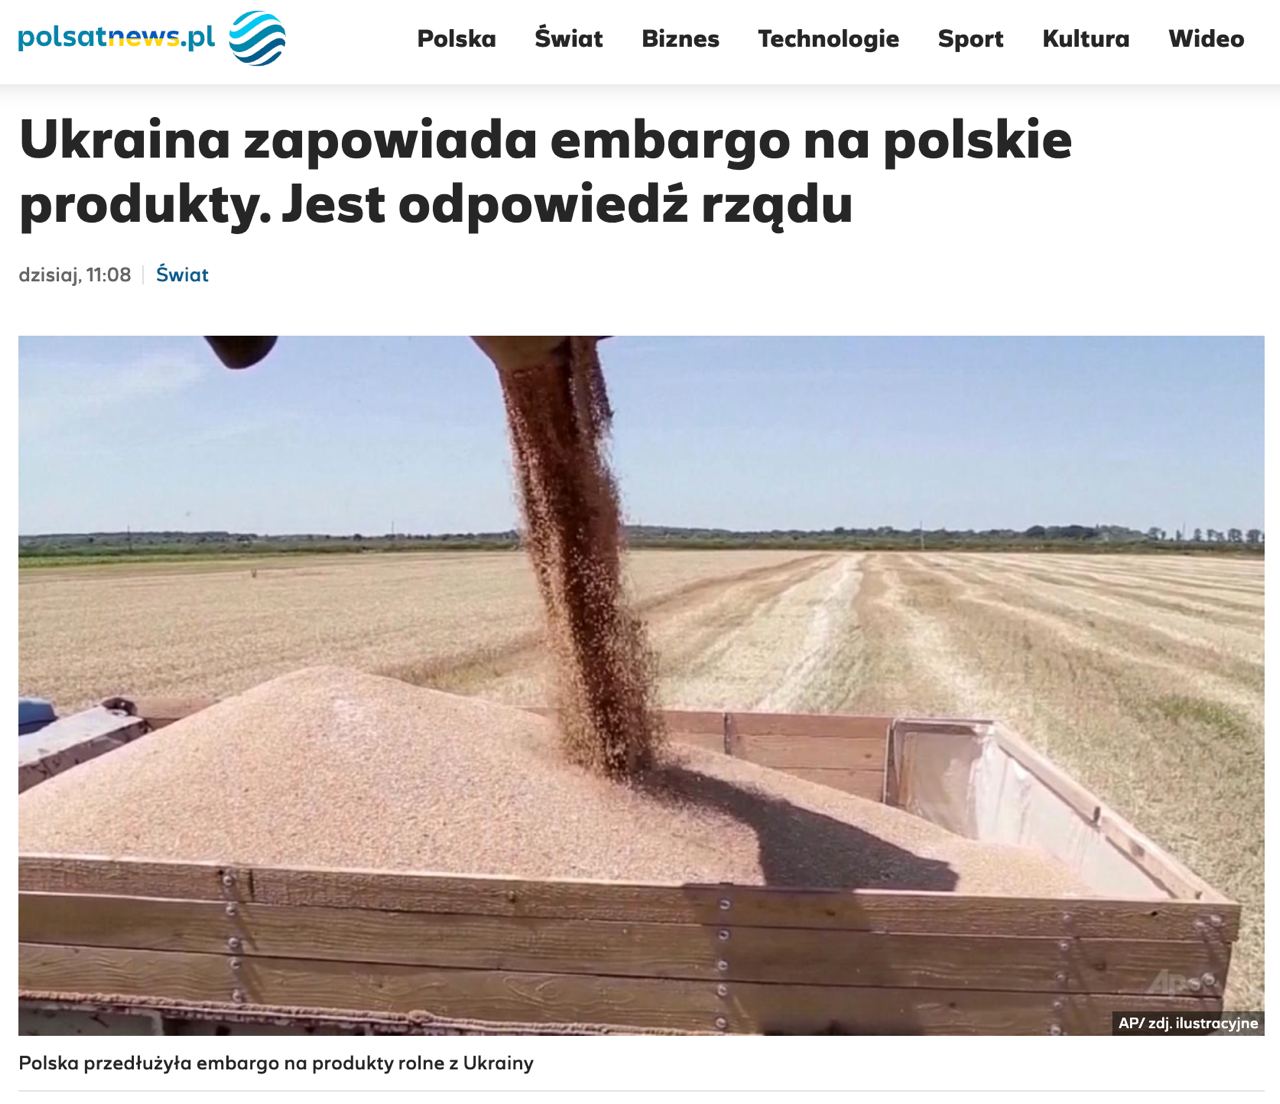 Польша пригрозила расширить эмбарго украинских продуктов